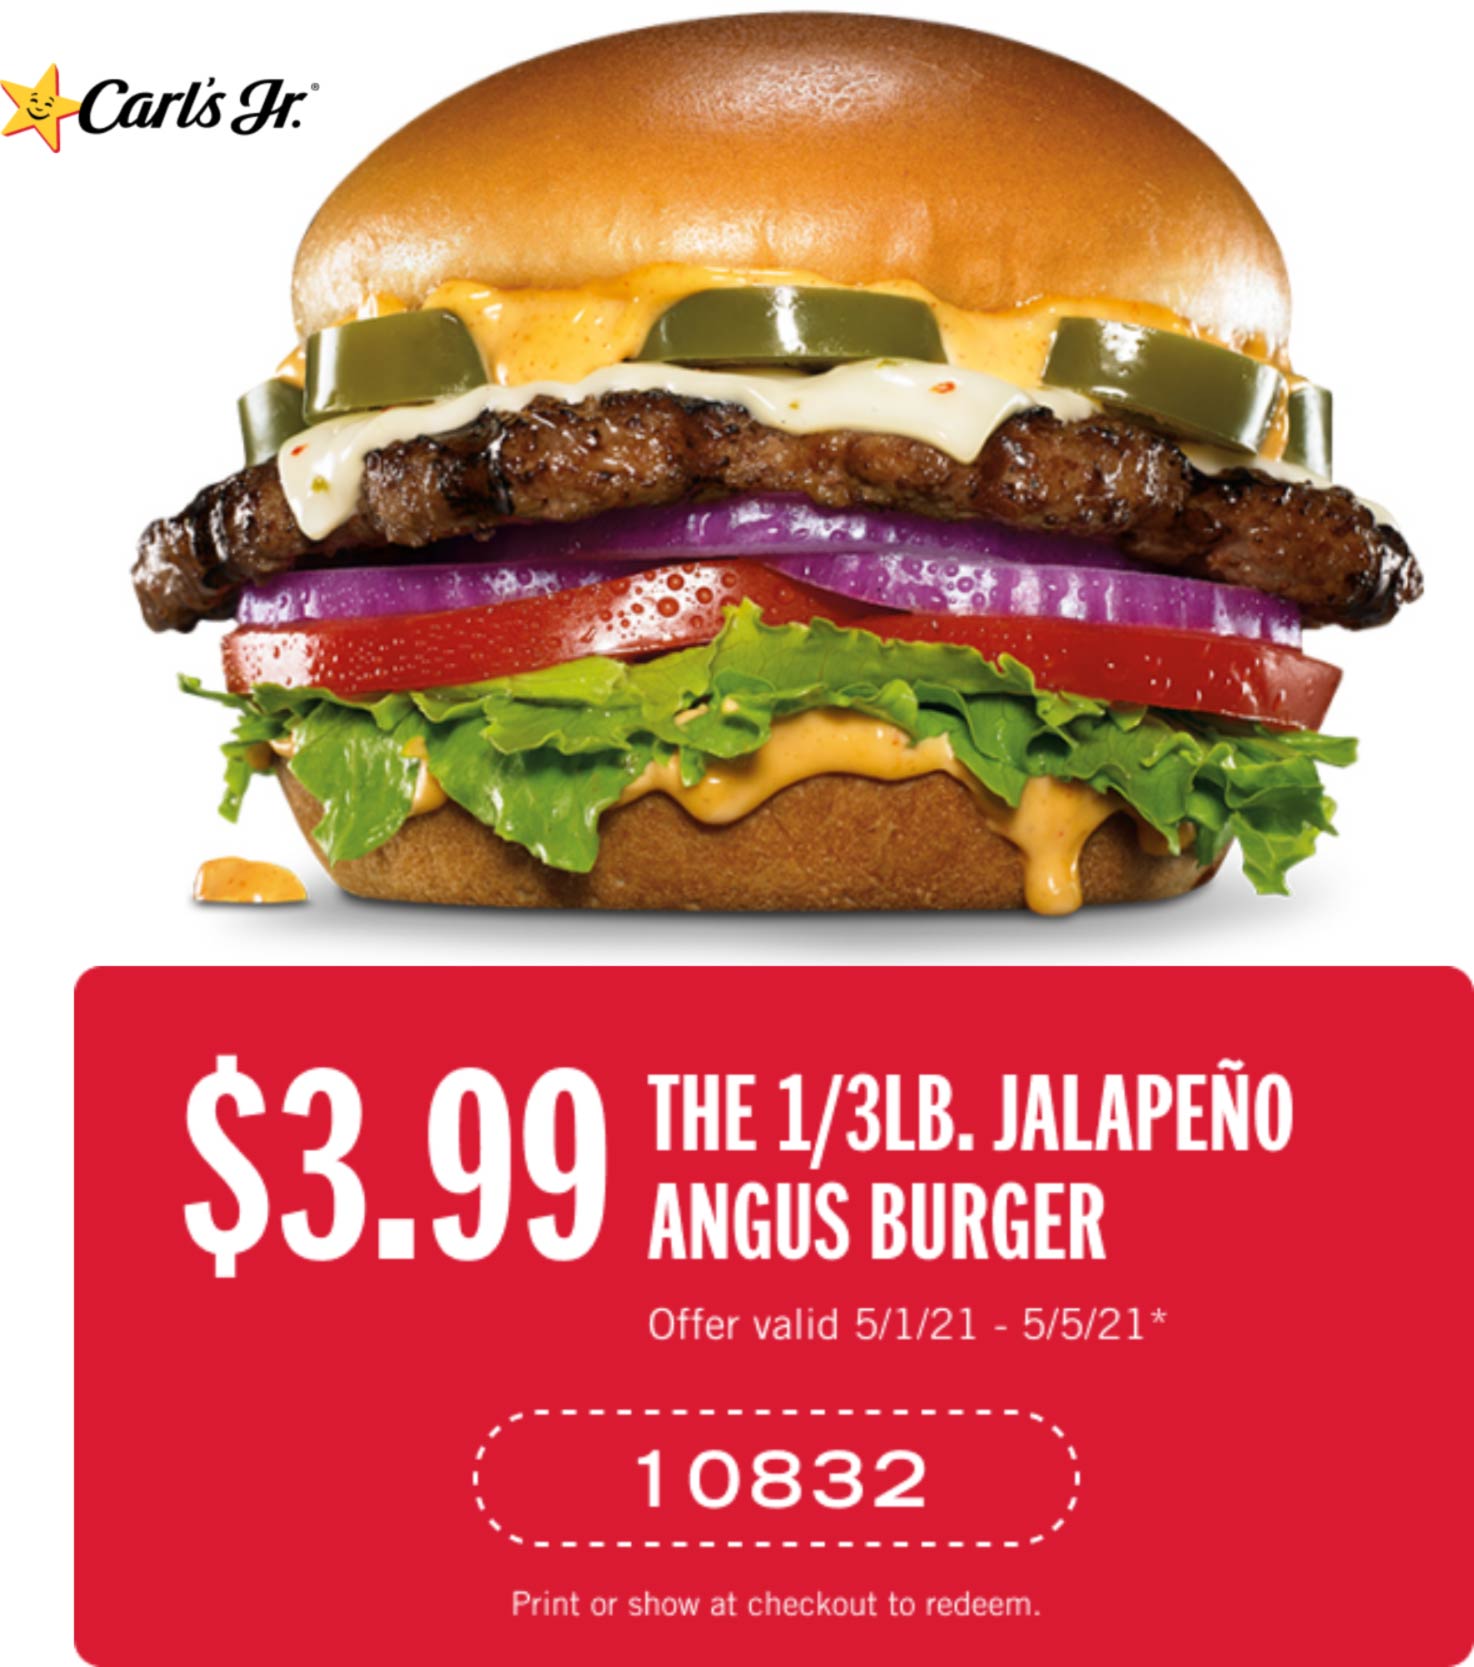 Carls Jr restaurants Coupon  Spicy third pound angus cheeseburger = $4 at Carls Jr #carlsjr 